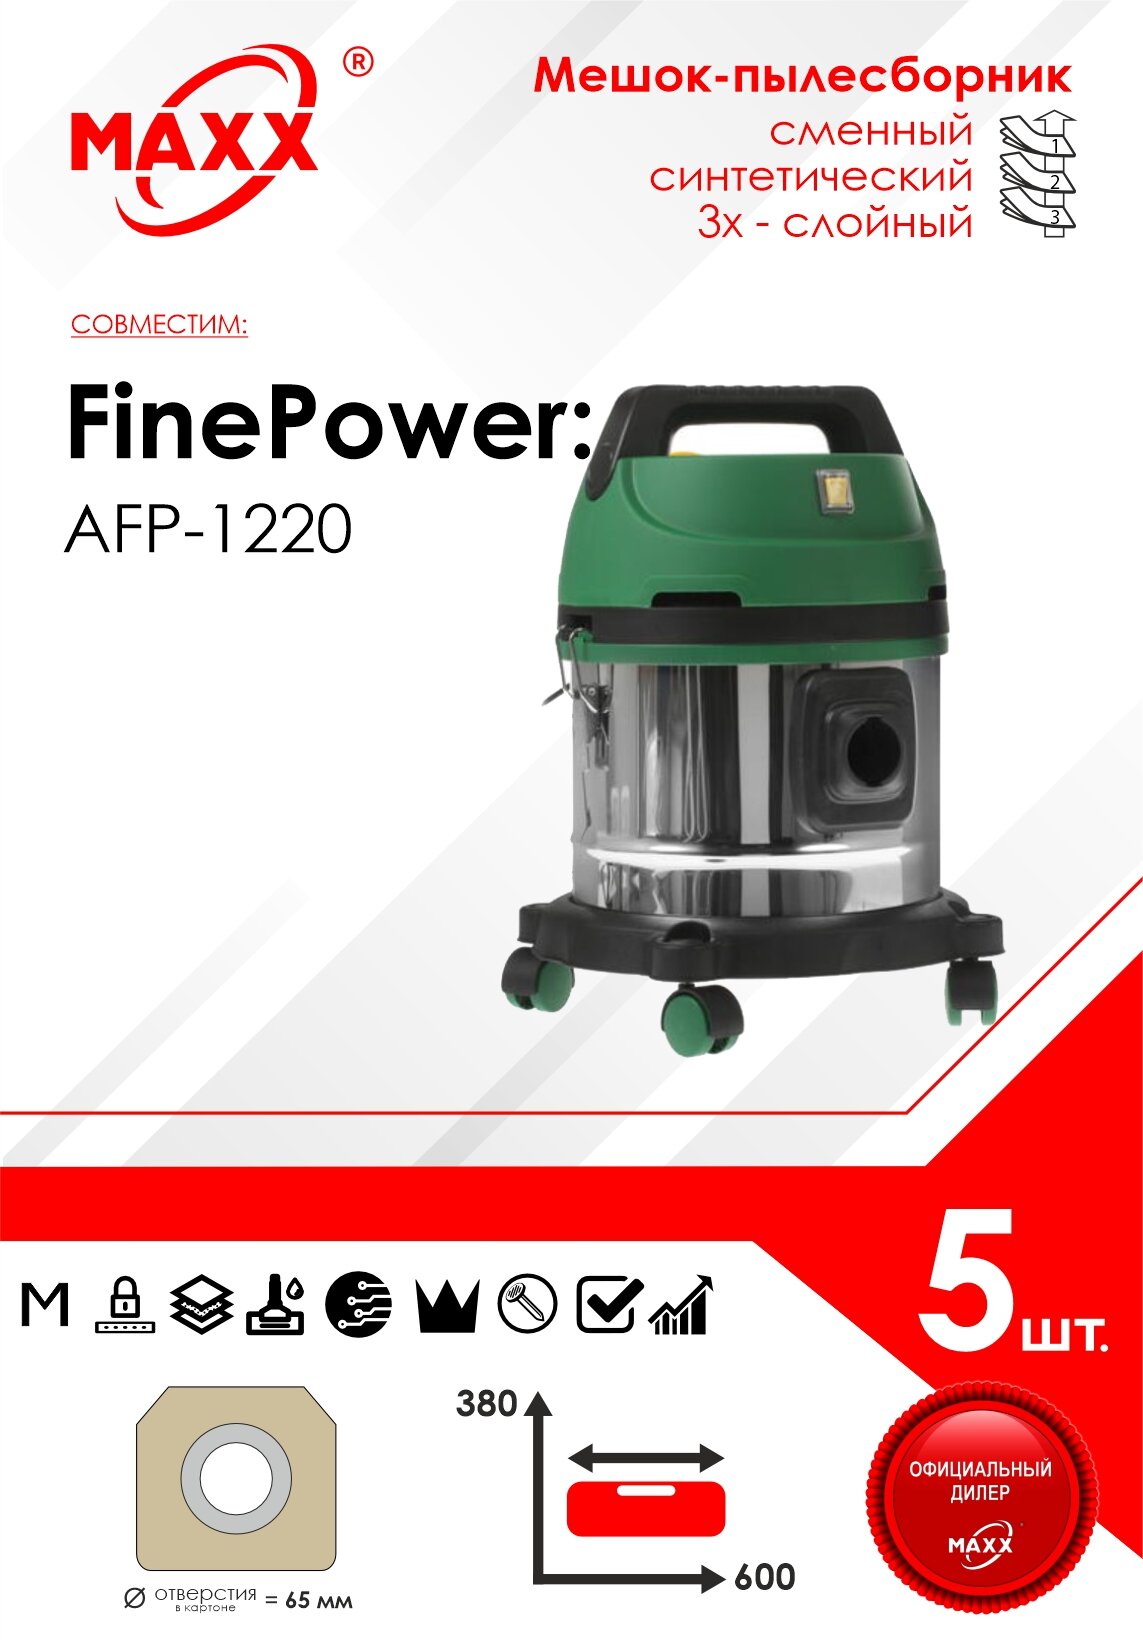 Мешок - пылесборник 5 шт. для пылесоса FinePower AFP-1220